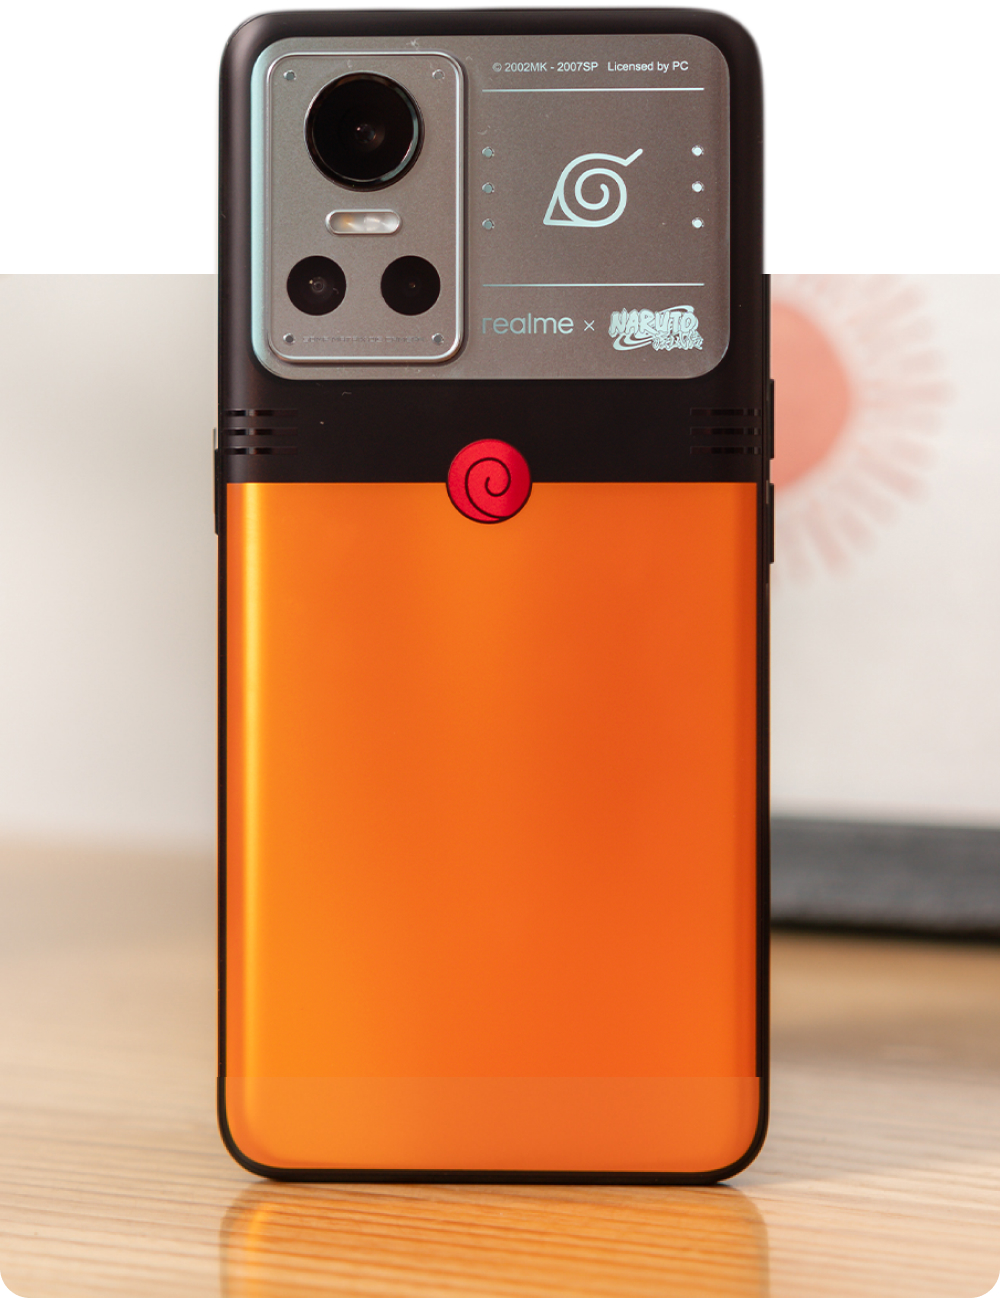 Đây là chiếc smartphone mà fan Naruto sẽ 'mê lên mê xuống' - Ảnh 25.